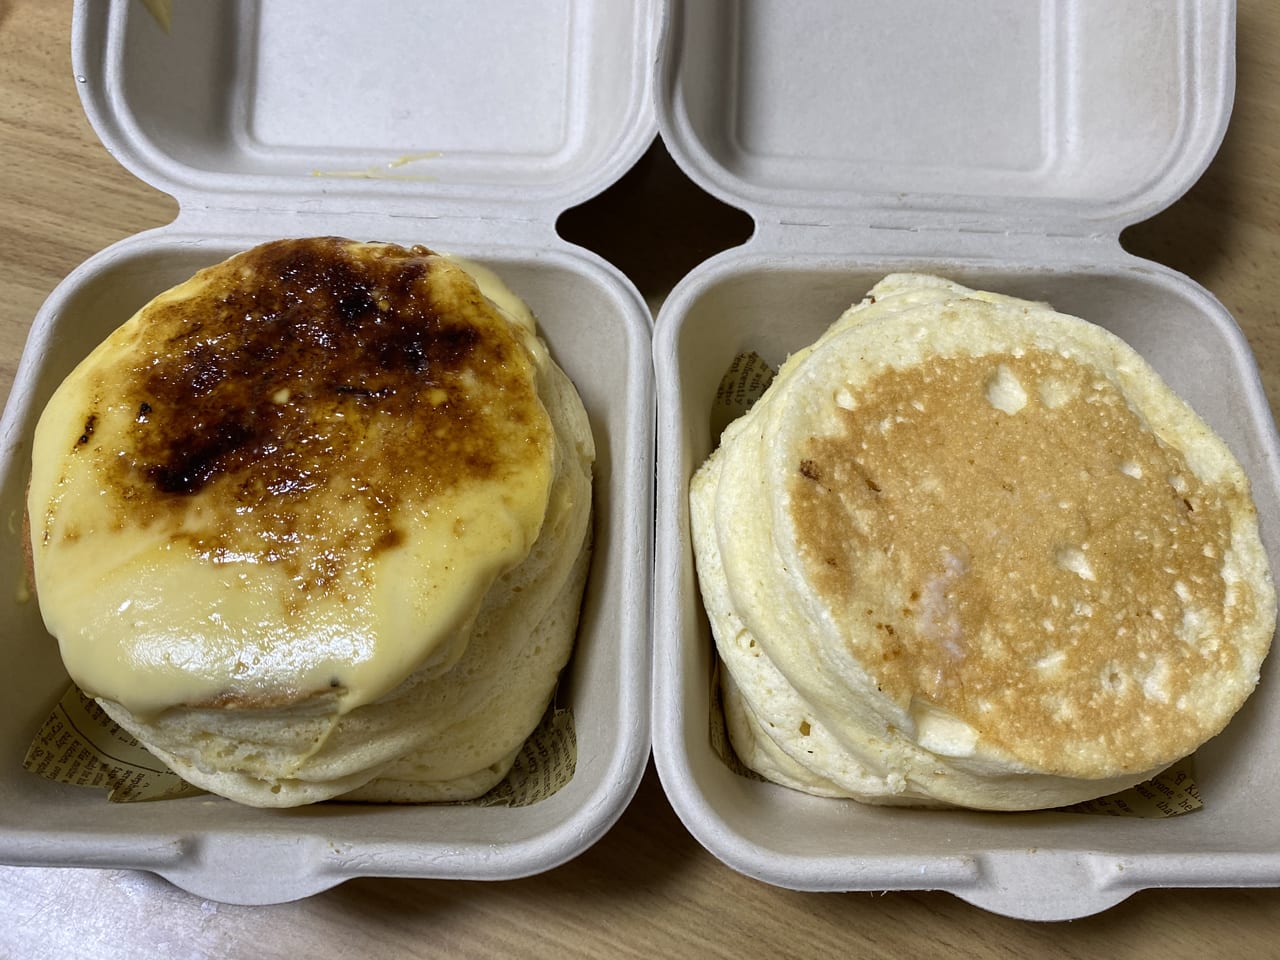 小平市 大人気 Egggcafe小平本店の幸せパンケーキがテイクアウトできます Gw期間中は選べるお得なランチもありますよ 号外net 小平市